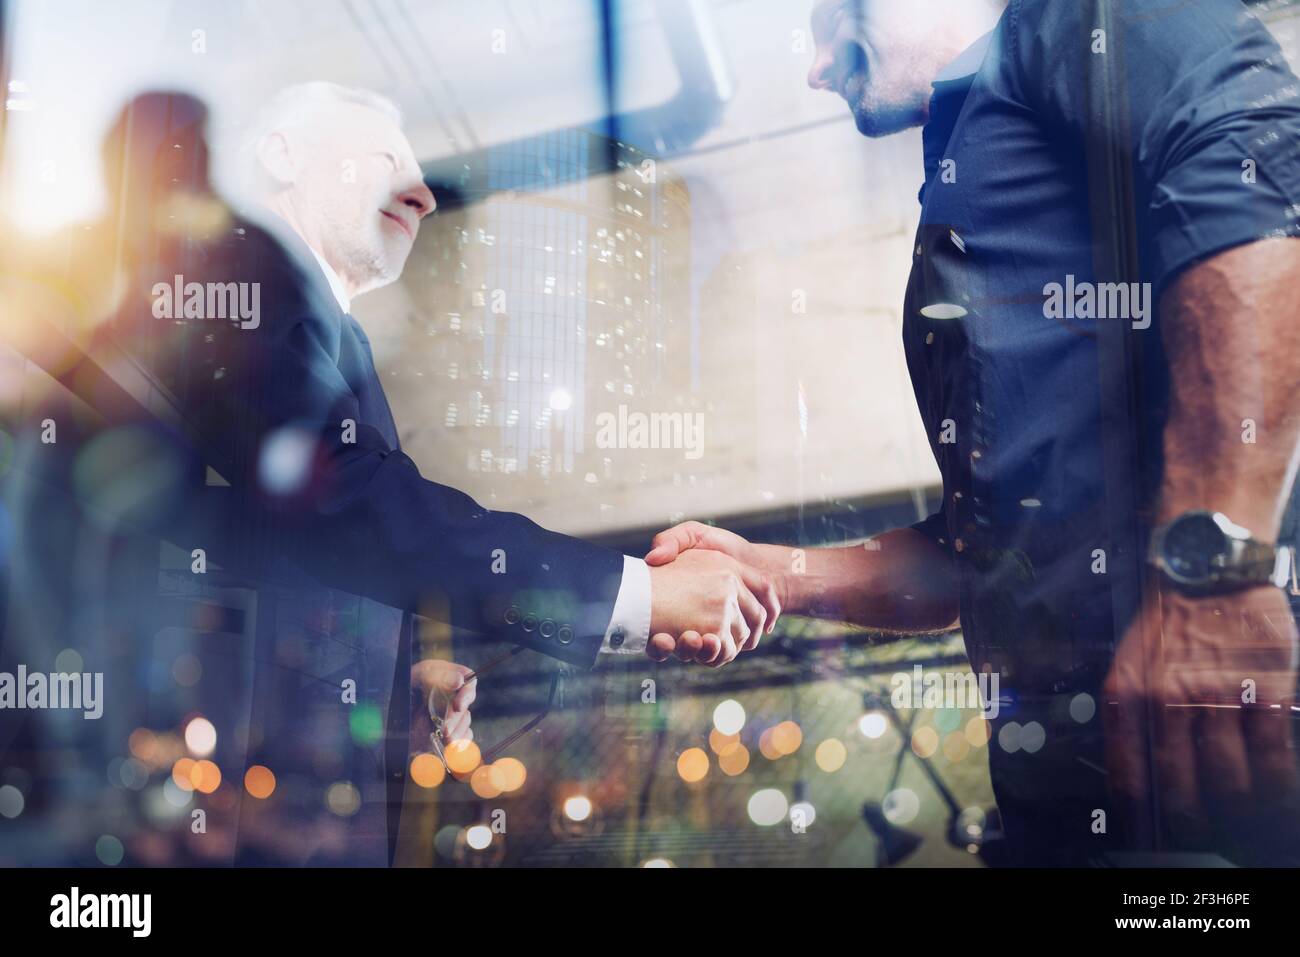 Handshaking persona de negocios en la oficina. El concepto de trabajo en equipo y colaboración. Foto de stock